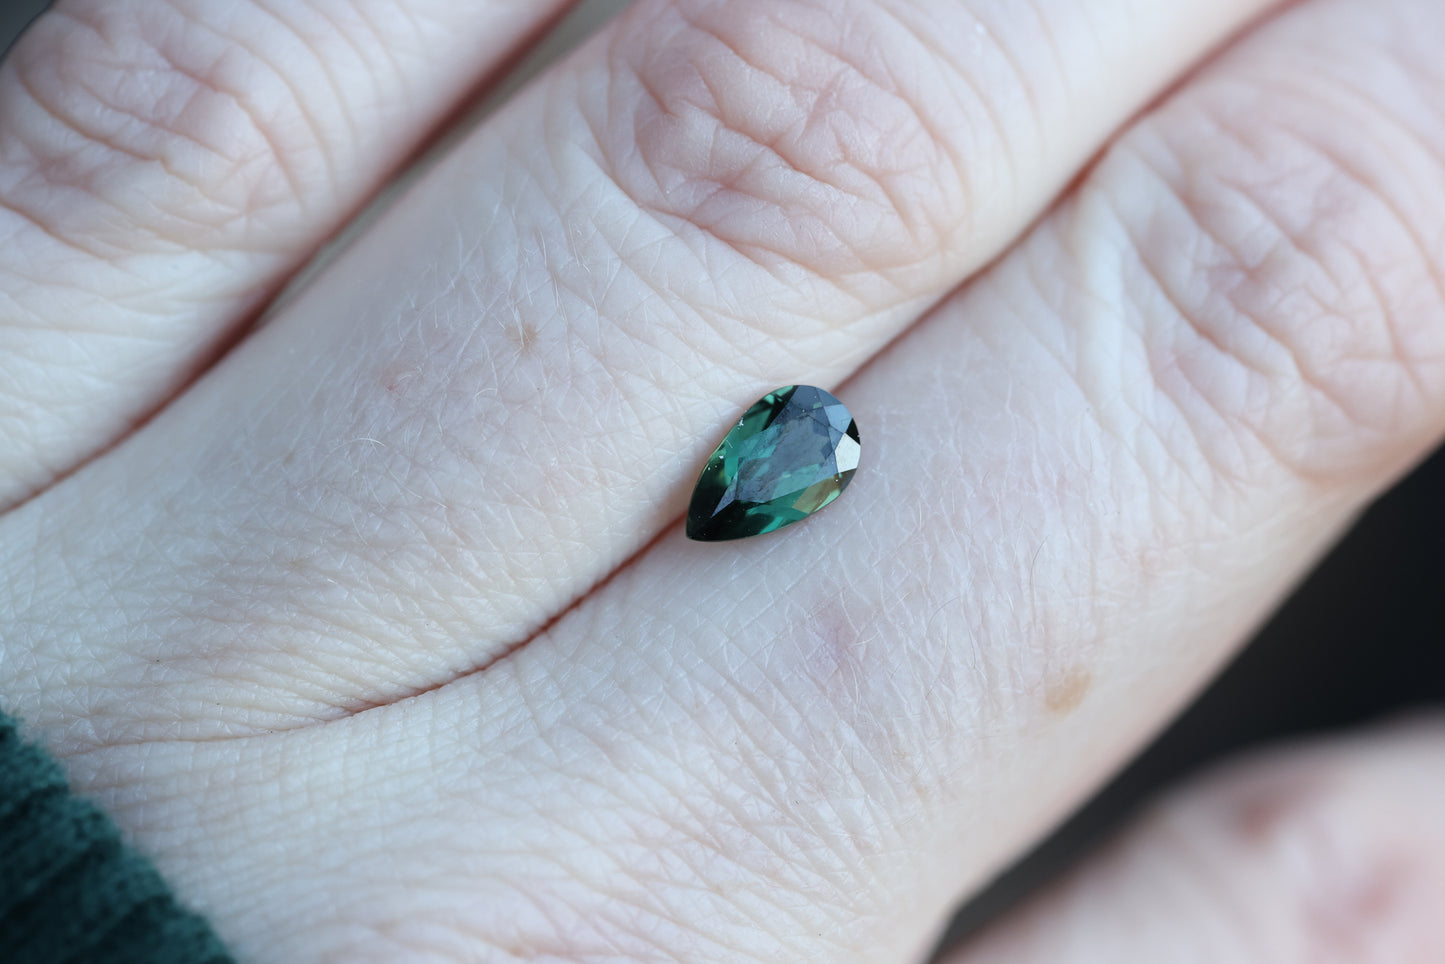 .91ct dark teal/blue/green pear sapphire